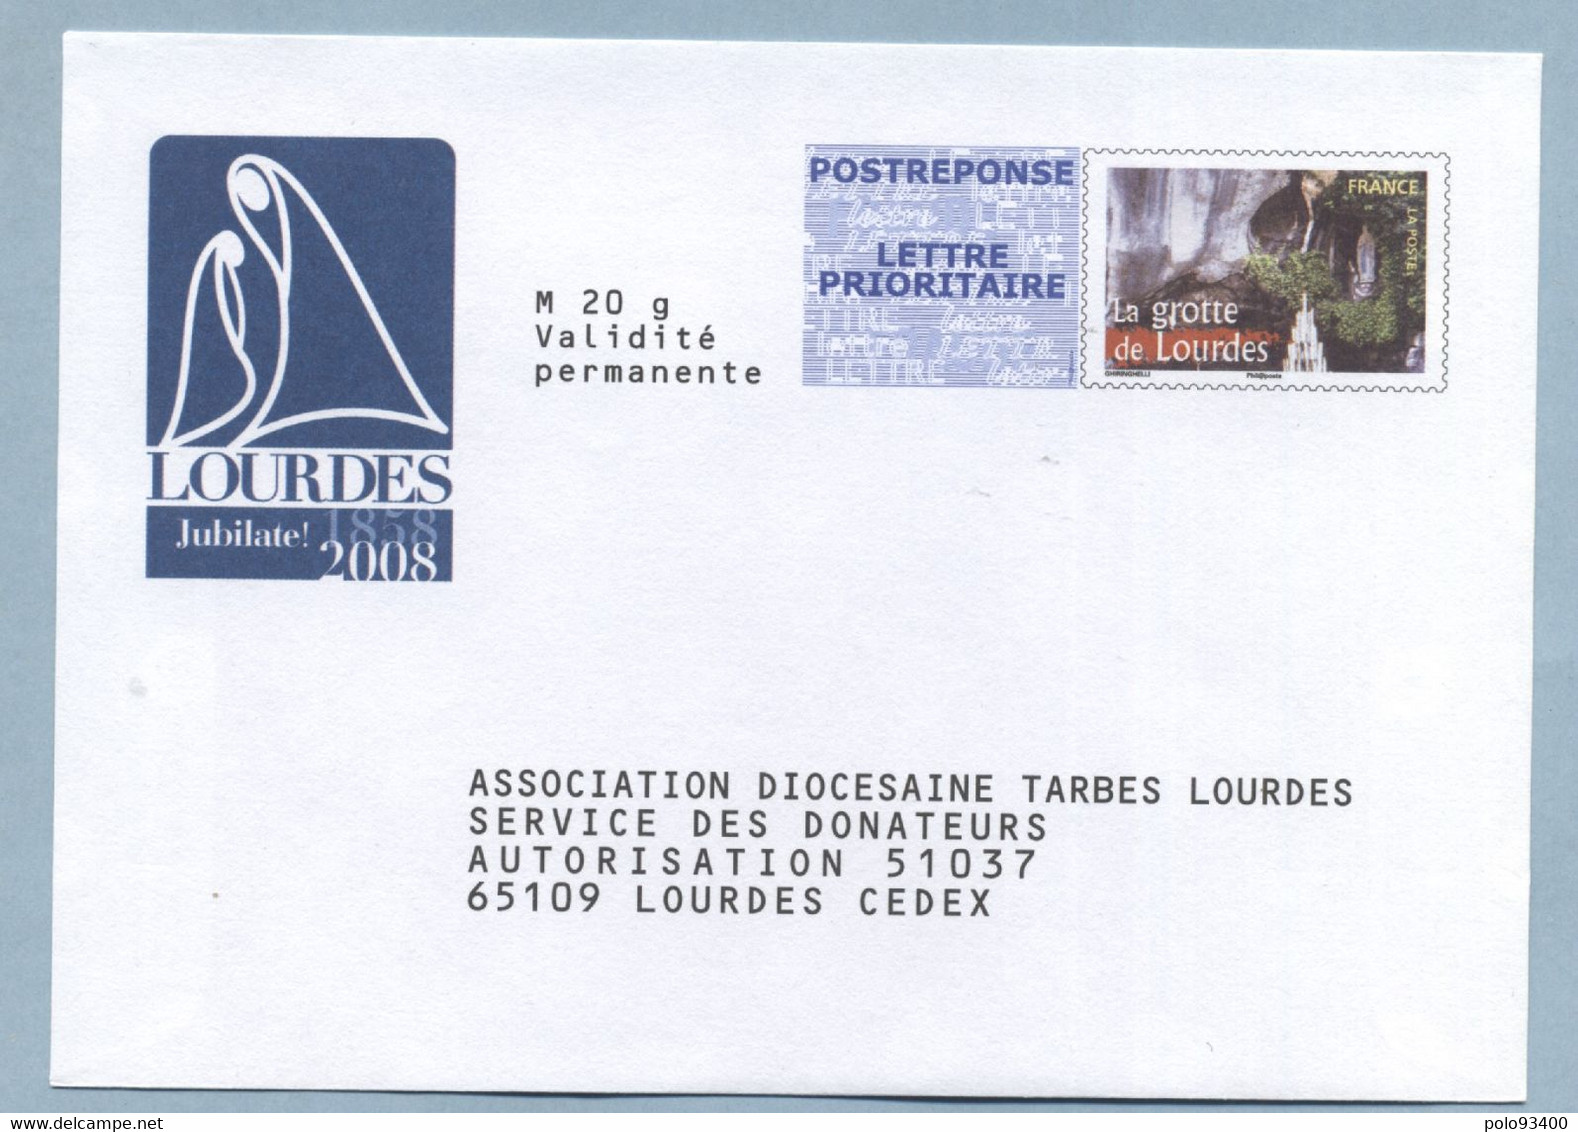 Association Diocésaine Tarbes Lourdes LOT 07P566 - Prêts-à-poster:reply